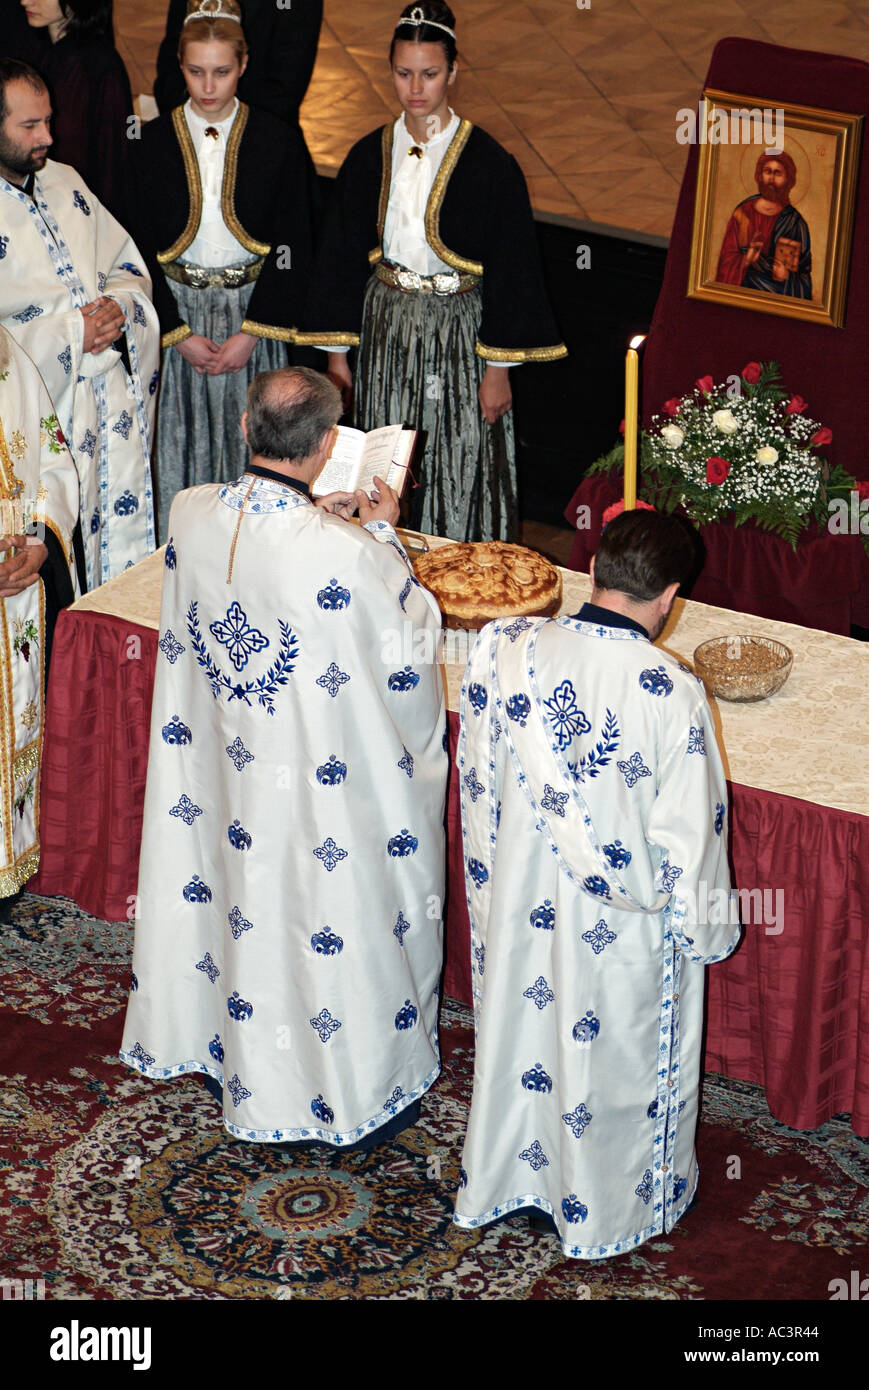 Sacerdote ortodoxo lectura durante un servicio de comunión en Saint Spasoje día o Spasovdan, Banja Luka, Bosnia y Herzegovina. Foto de stock